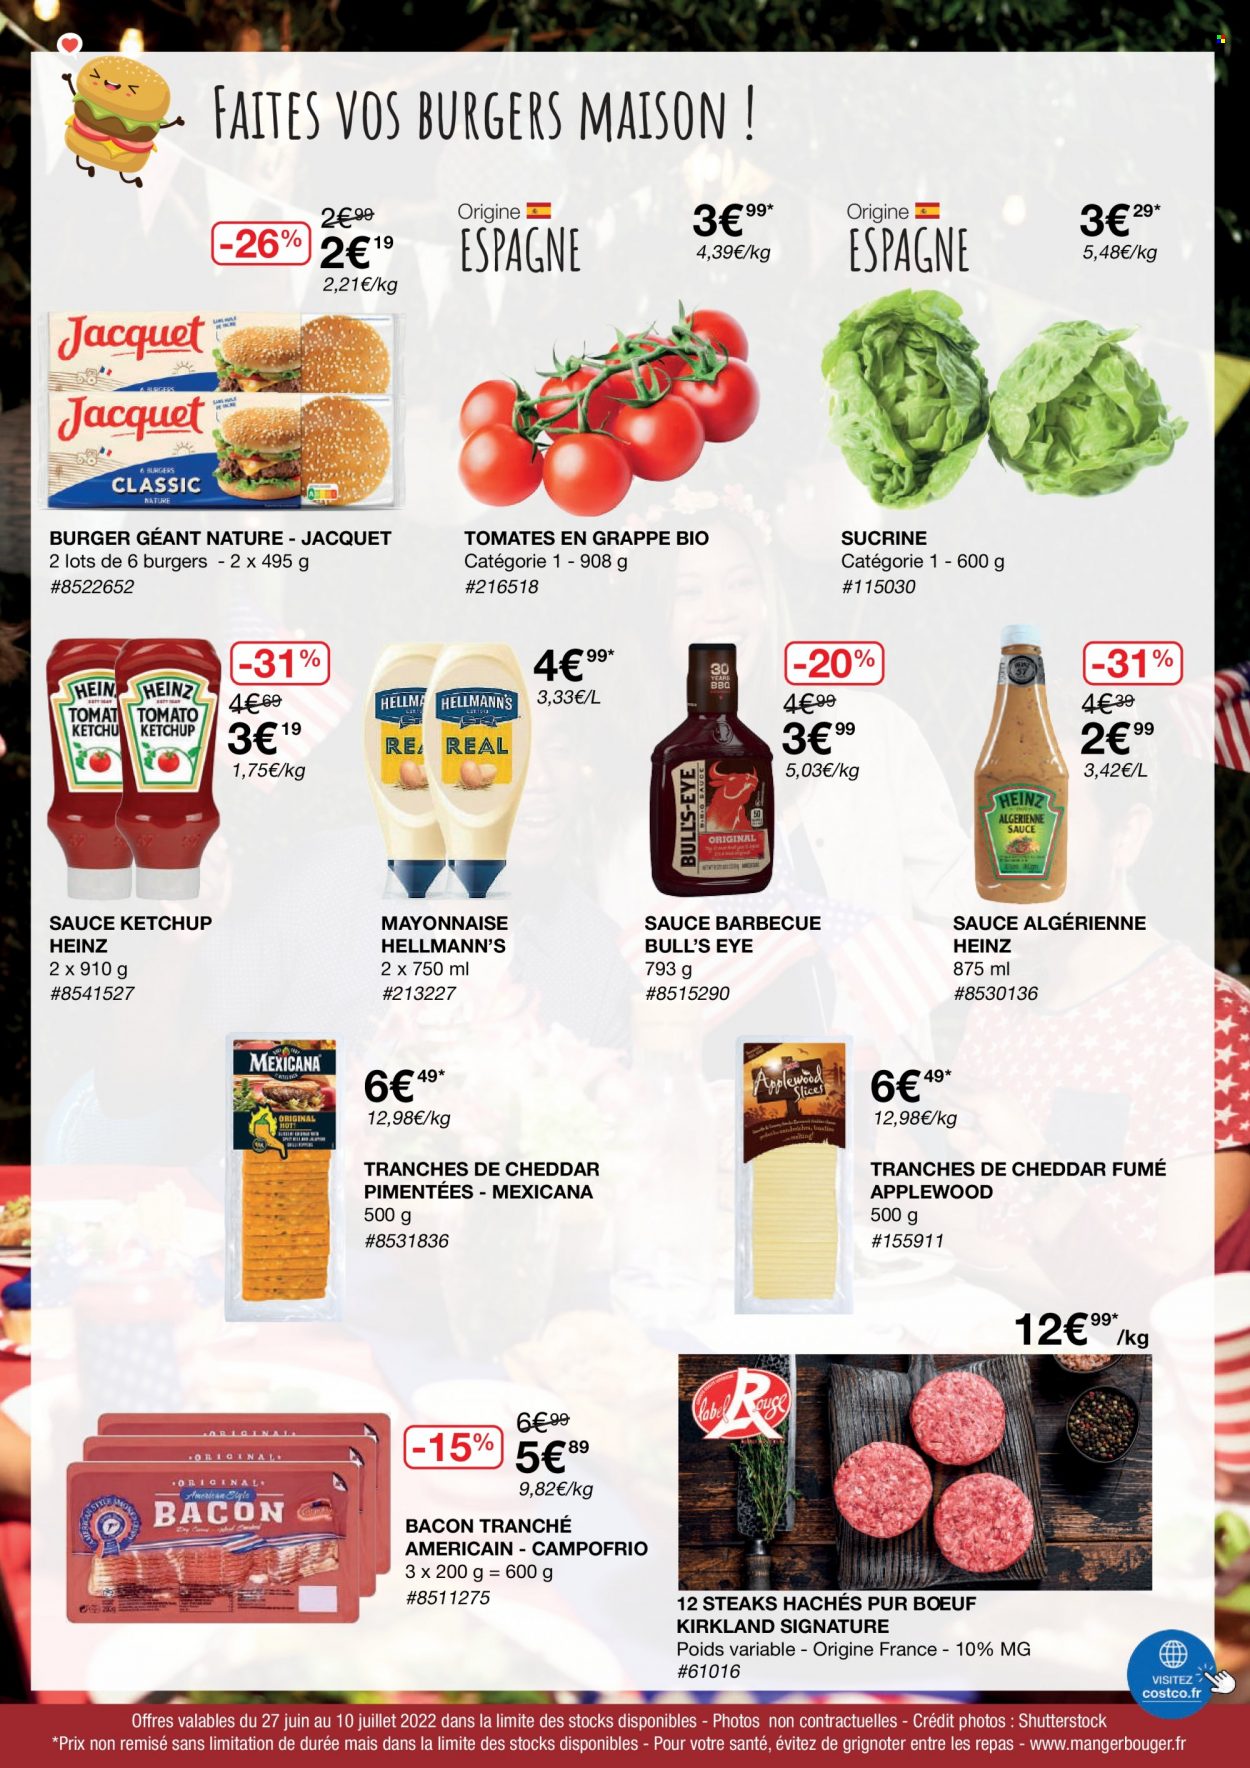 thumbnail - Catalogue Costco - 27/06/2022 - 10/07/2022 - Produits soldés - steak haché, viande hachée, bacon, mayonnaise, Heinz, ketchup, maison. Page 3.